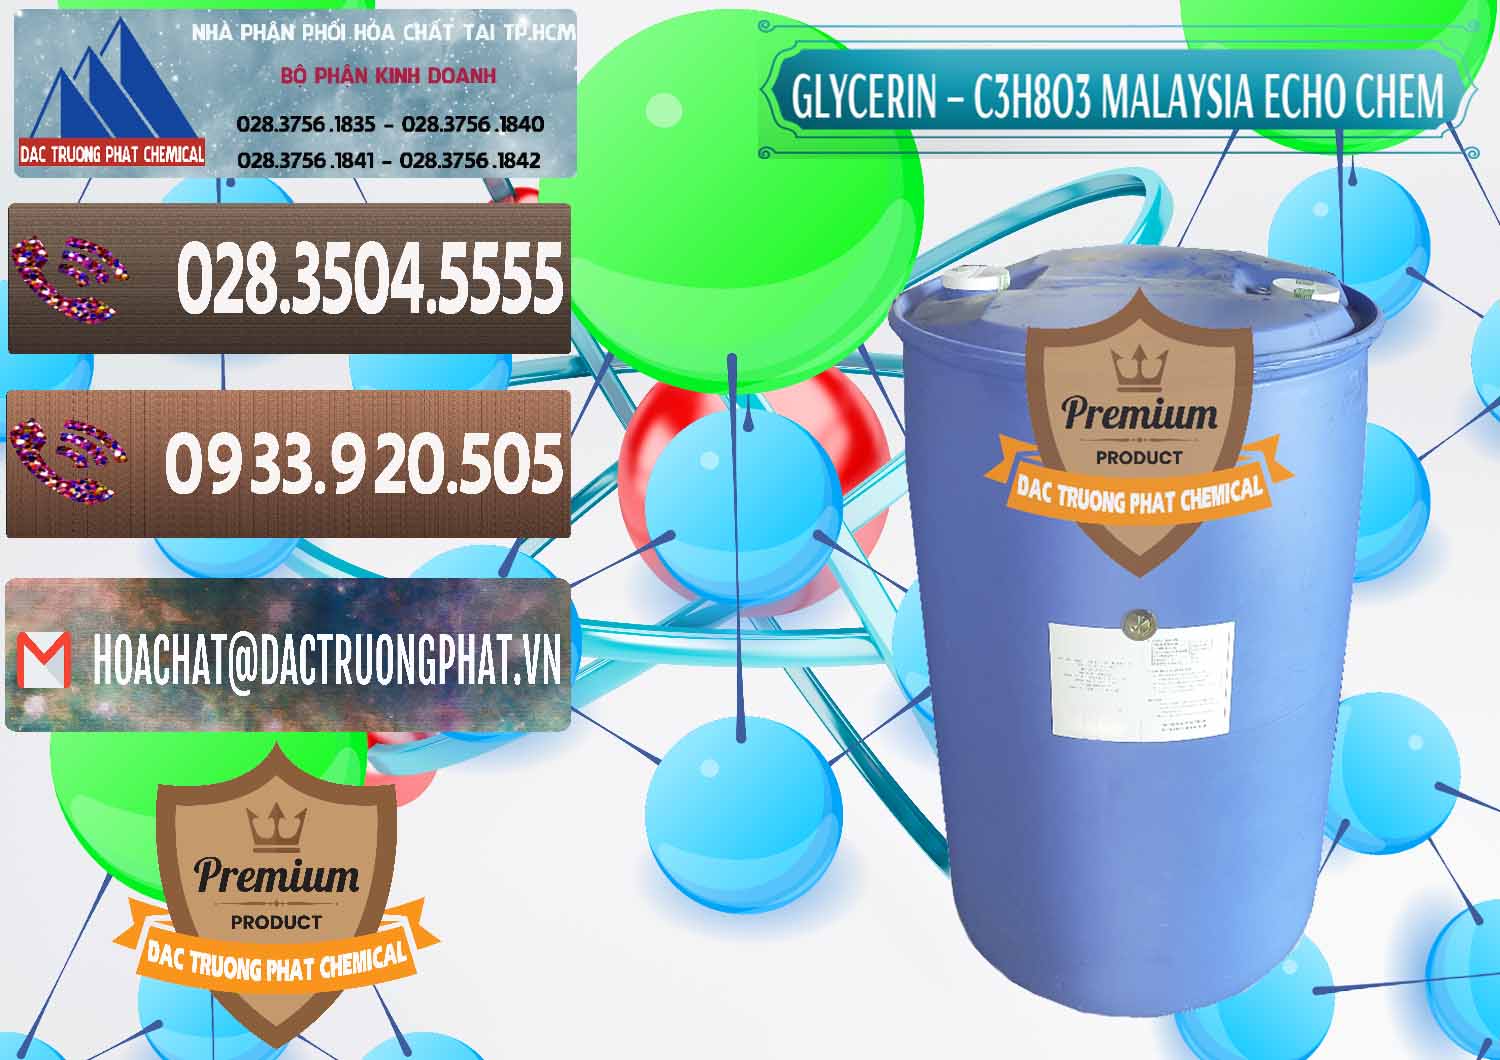 Nhà cung cấp _ bán Glycerin – C3H8O3 99.7% Echo Chem Malaysia - 0273 - Đơn vị chuyên cung cấp - nhập khẩu hóa chất tại TP.HCM - hoachatviet.net